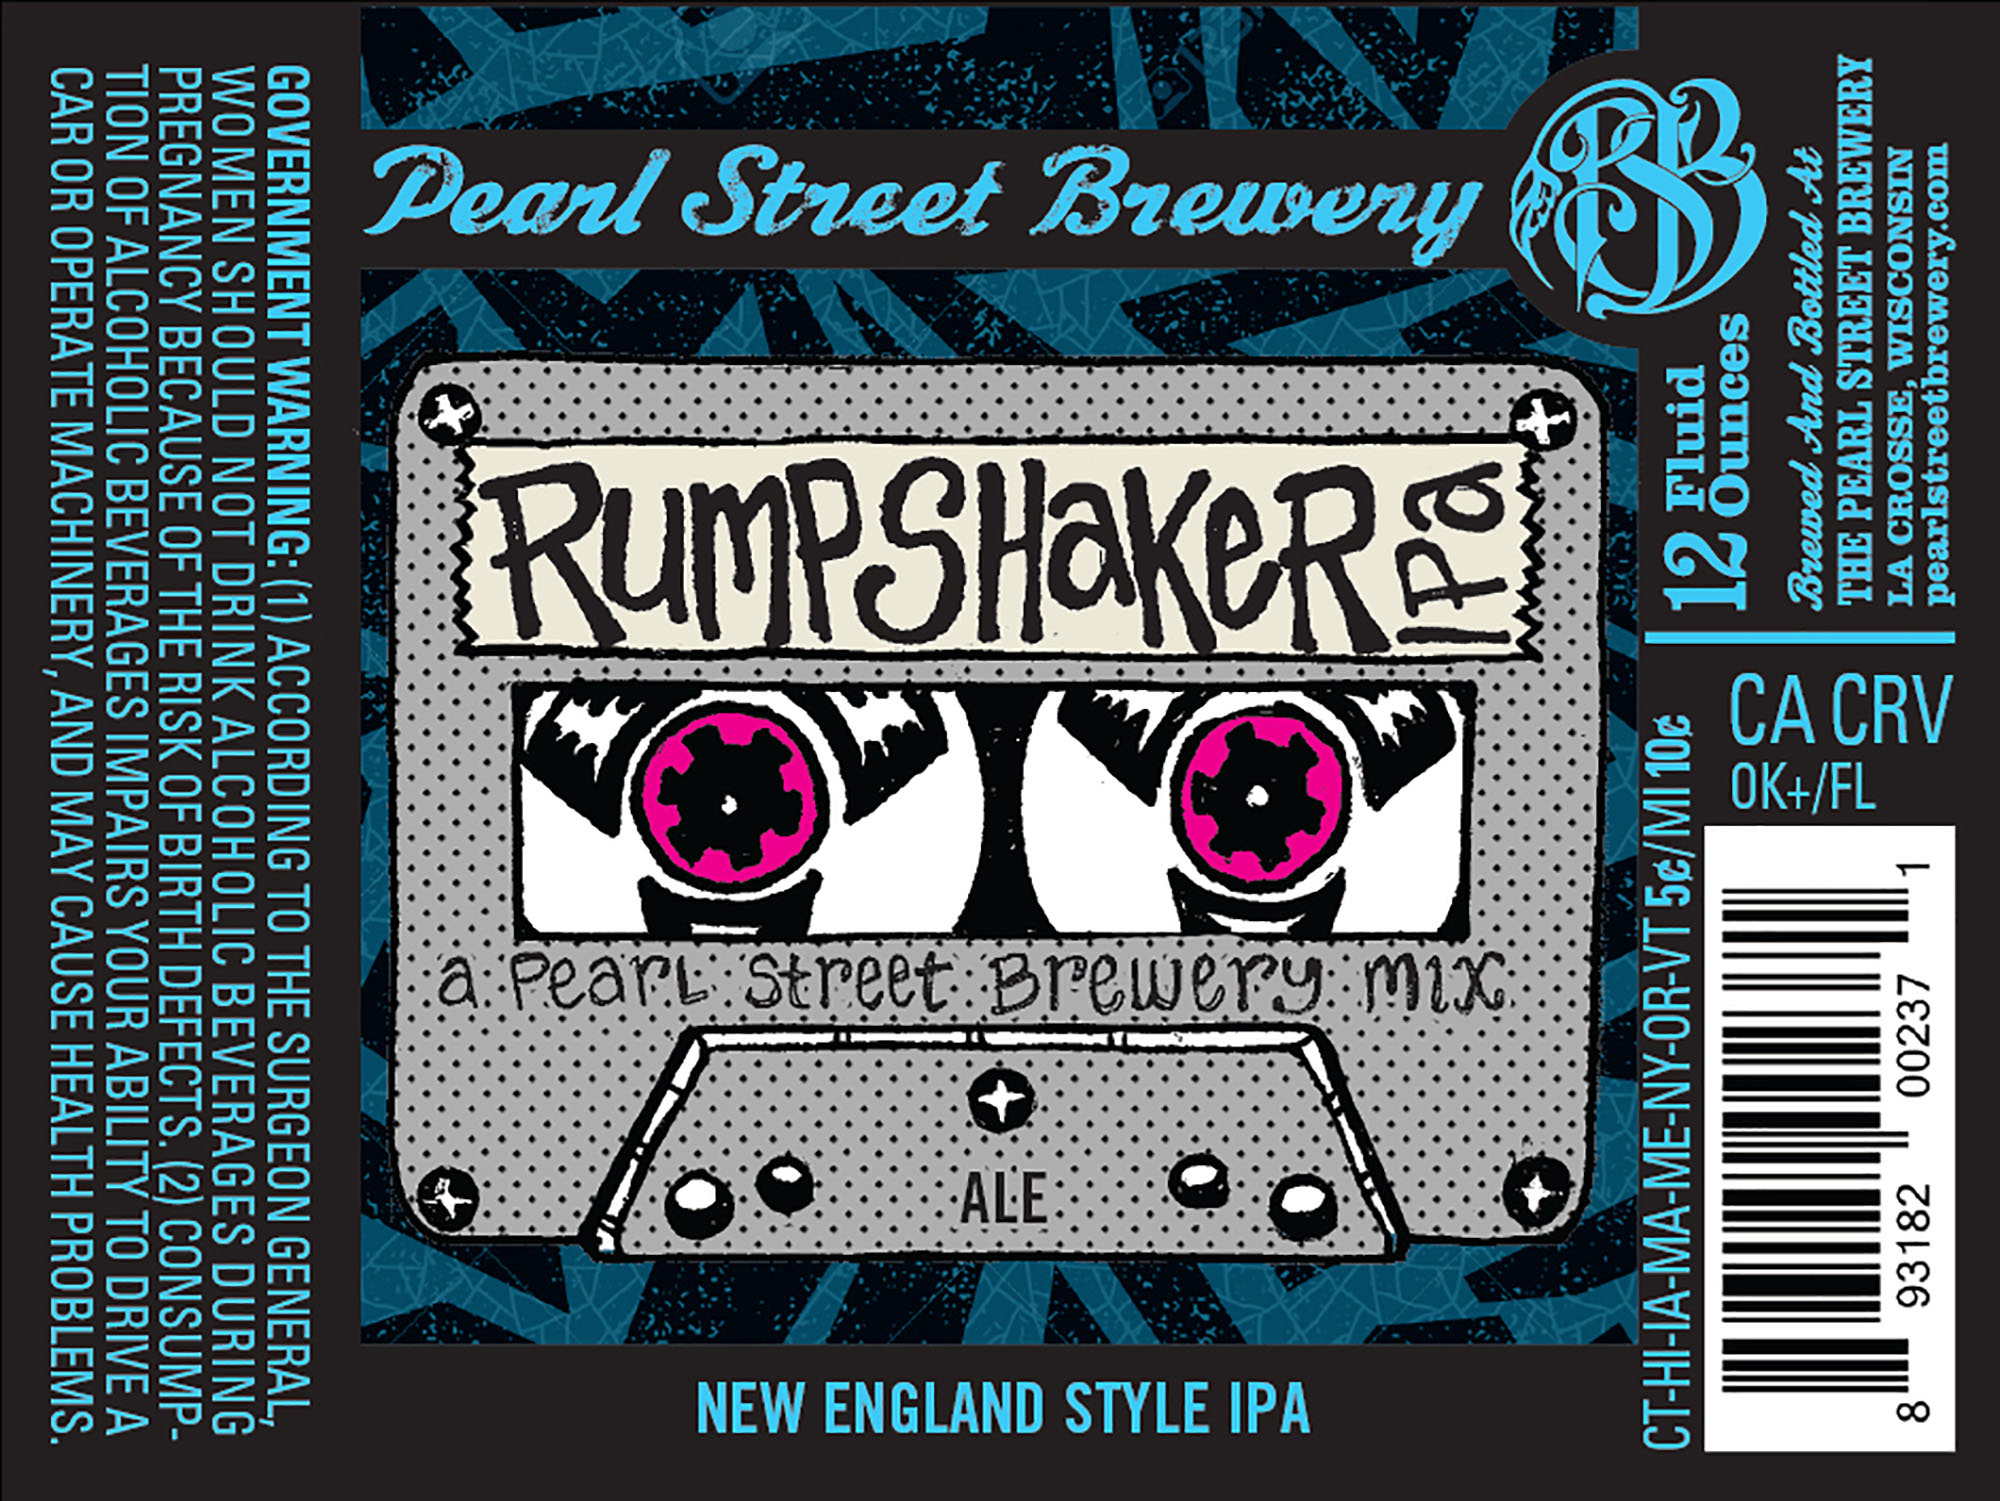 Peart Street Brewery's Rumpshaker